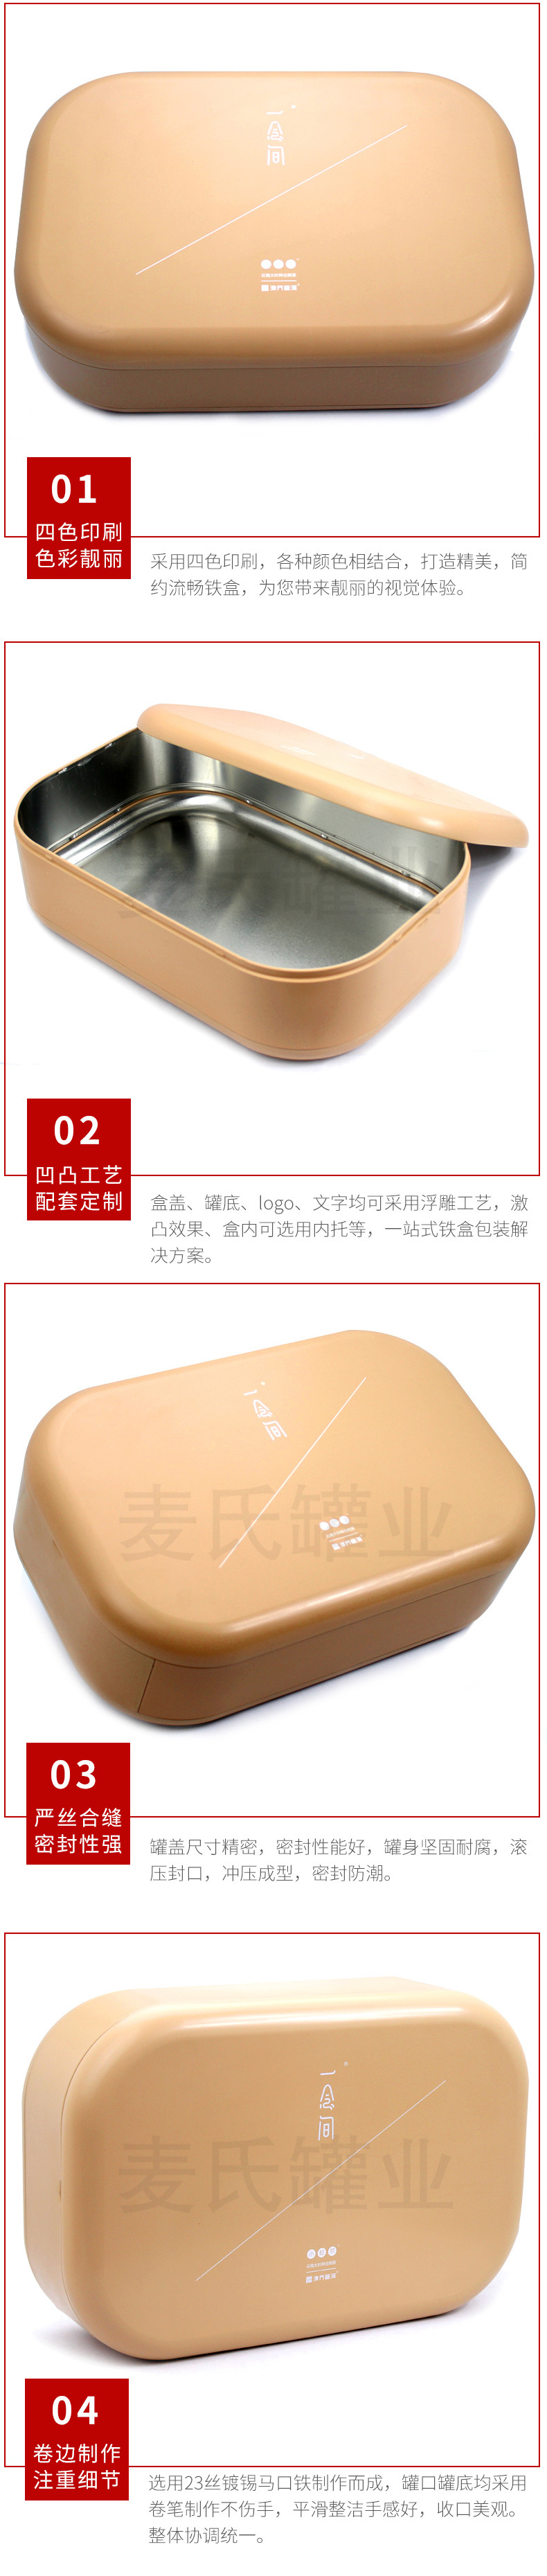 厂家定制龙珠茶包装铁盒 大号陈皮普洱茶马口铁盒生产 茶叶铁罐示例图13